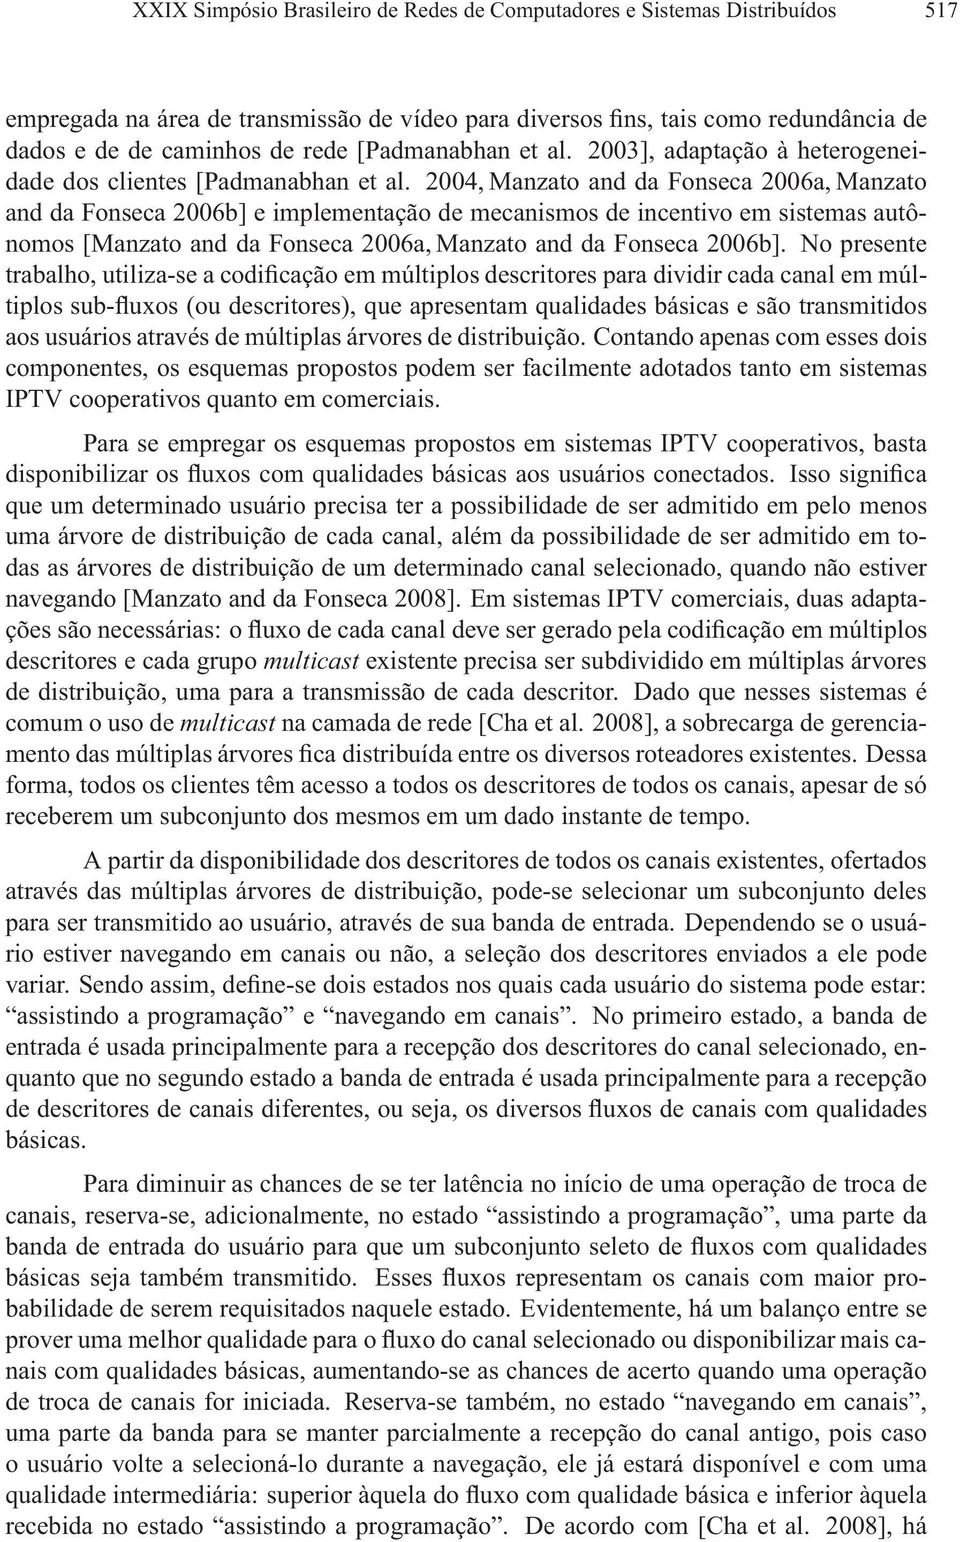 2004, Manzato and da Fonseca 2006a, Manzato and da Fonseca 2006b] e implementação de mecanismos de incentivo em sistemas autônomos[manzato and da Fonseca 2006a, Manzato and da Fonseca 2006b].